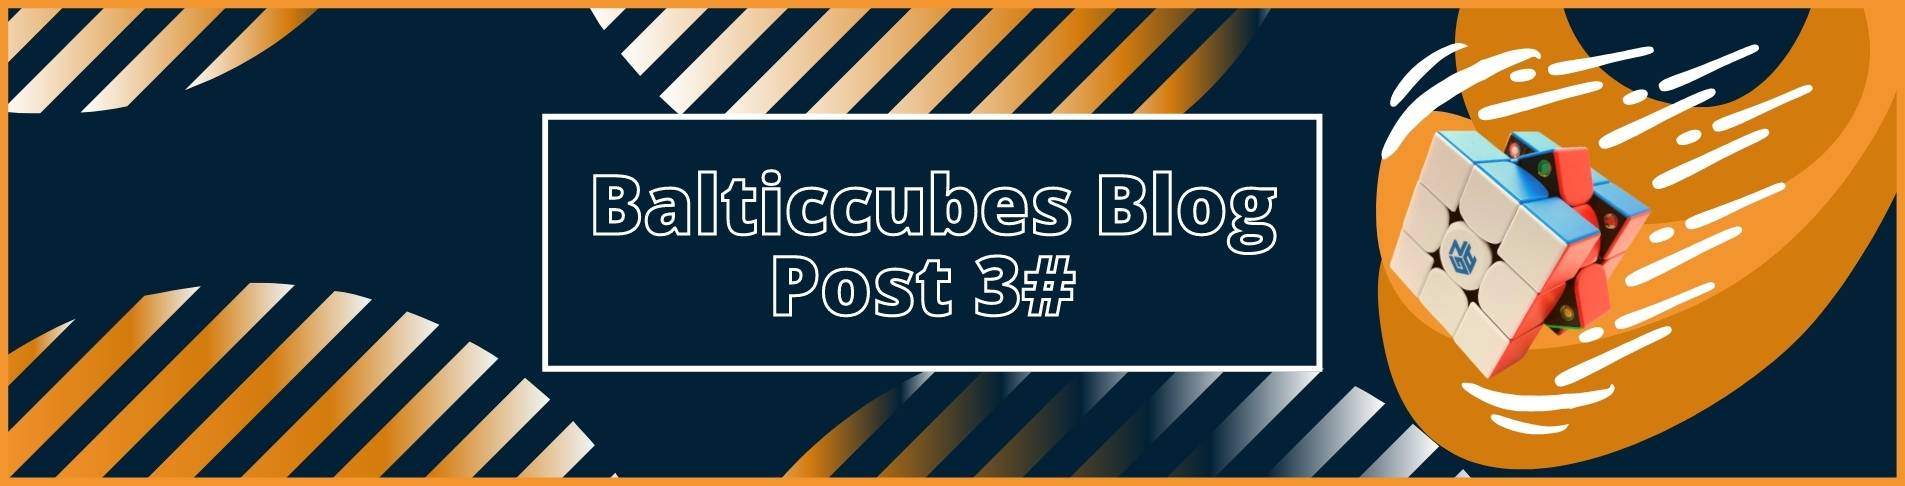 Balticcubes Blog Post 3